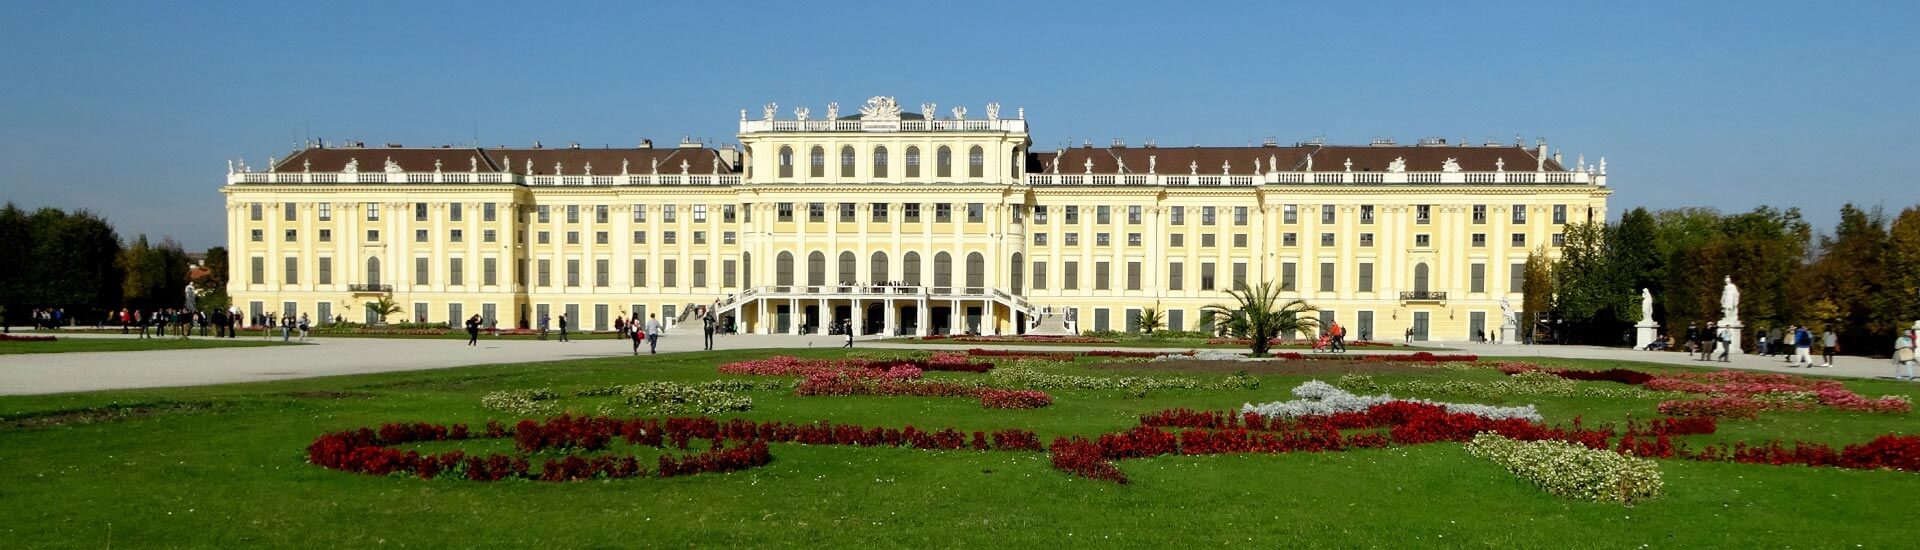 Palast Wien